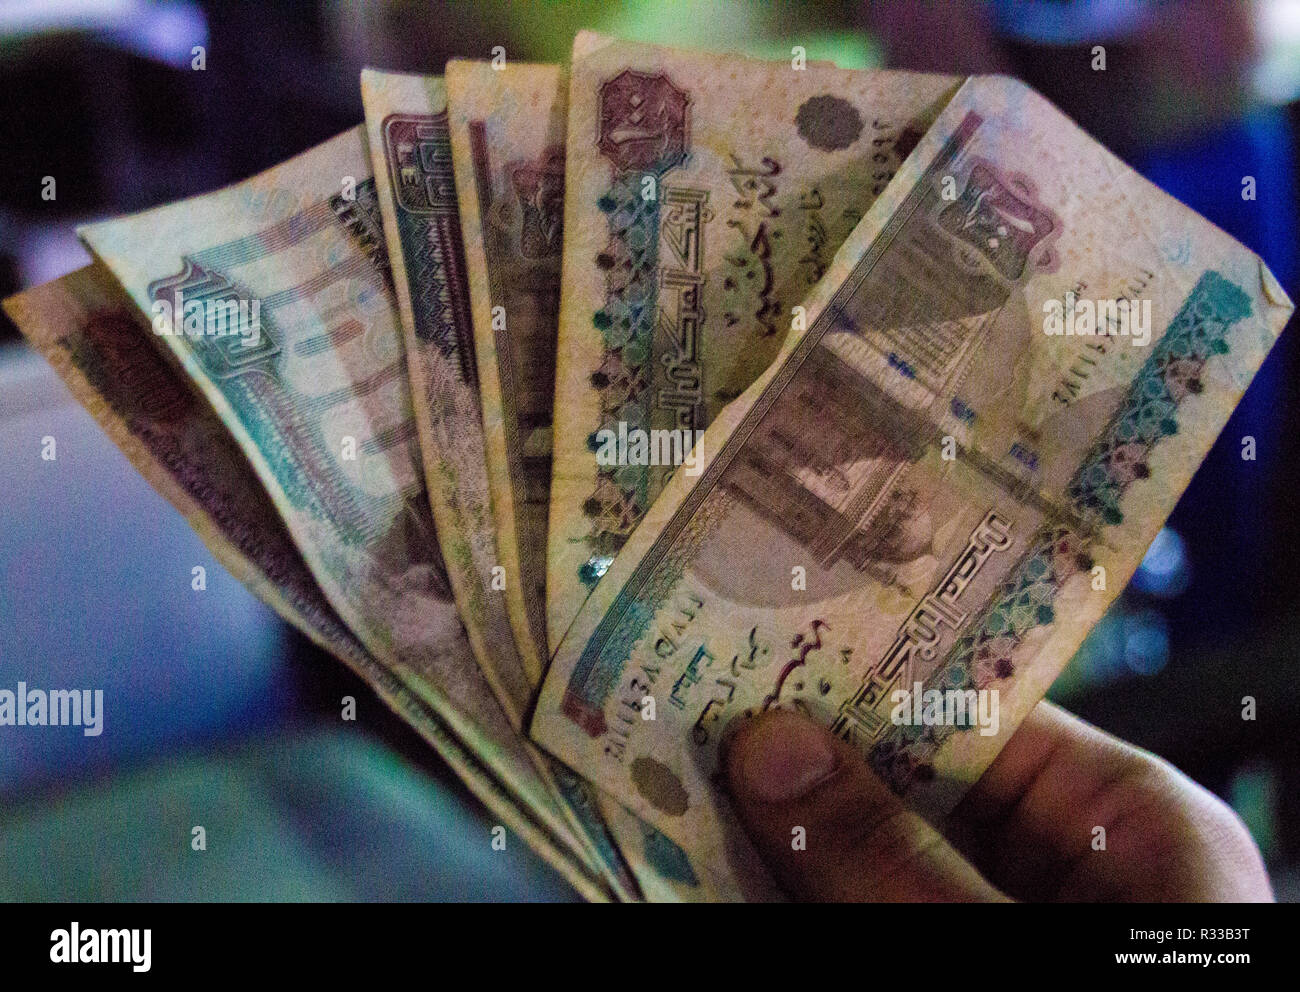 El-Shaikh Sharm, Ägypten - November 2, 2018: - Foto für Ägyptische Geld In der ägyptischen Stadt Scharm el-Scheich, und seinen Wert hat hundert ägyptische P Stockfoto